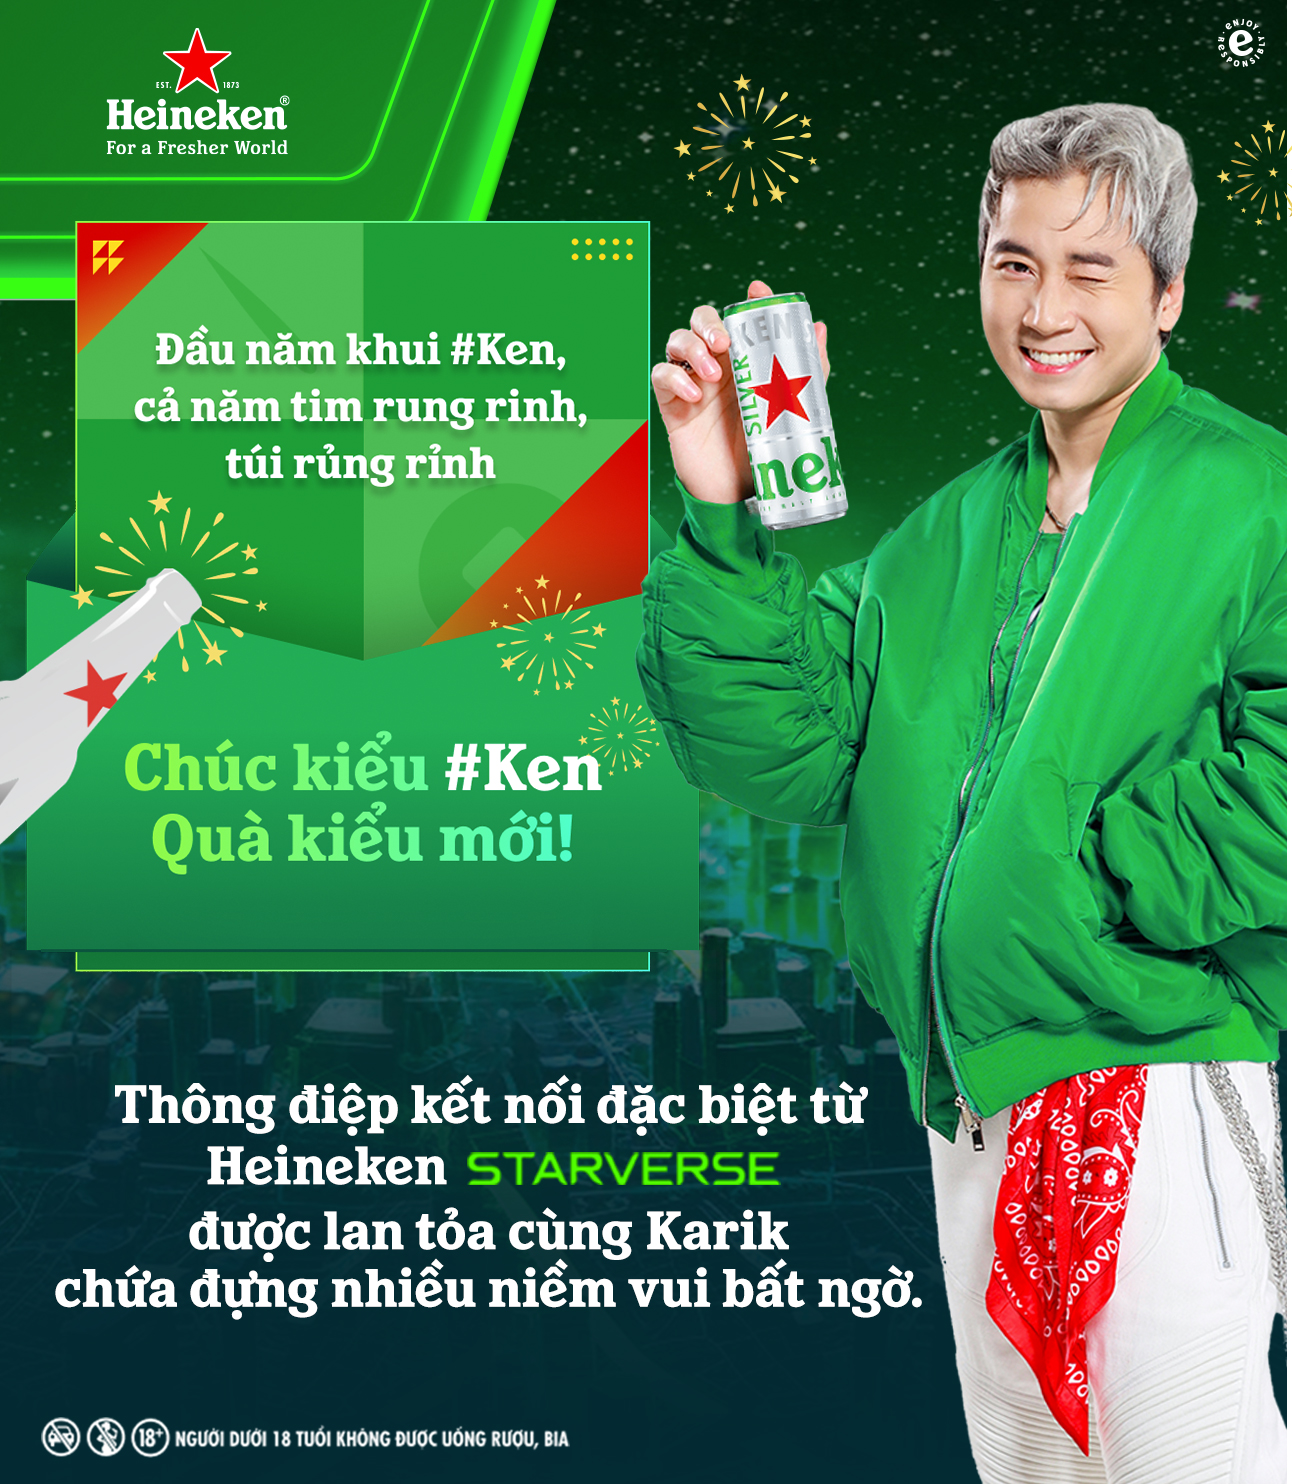 Mở kết nối kiểu mới, mở quà kiểu #Ken, đón lễ hội bừng sắc xuân - Ảnh 2.